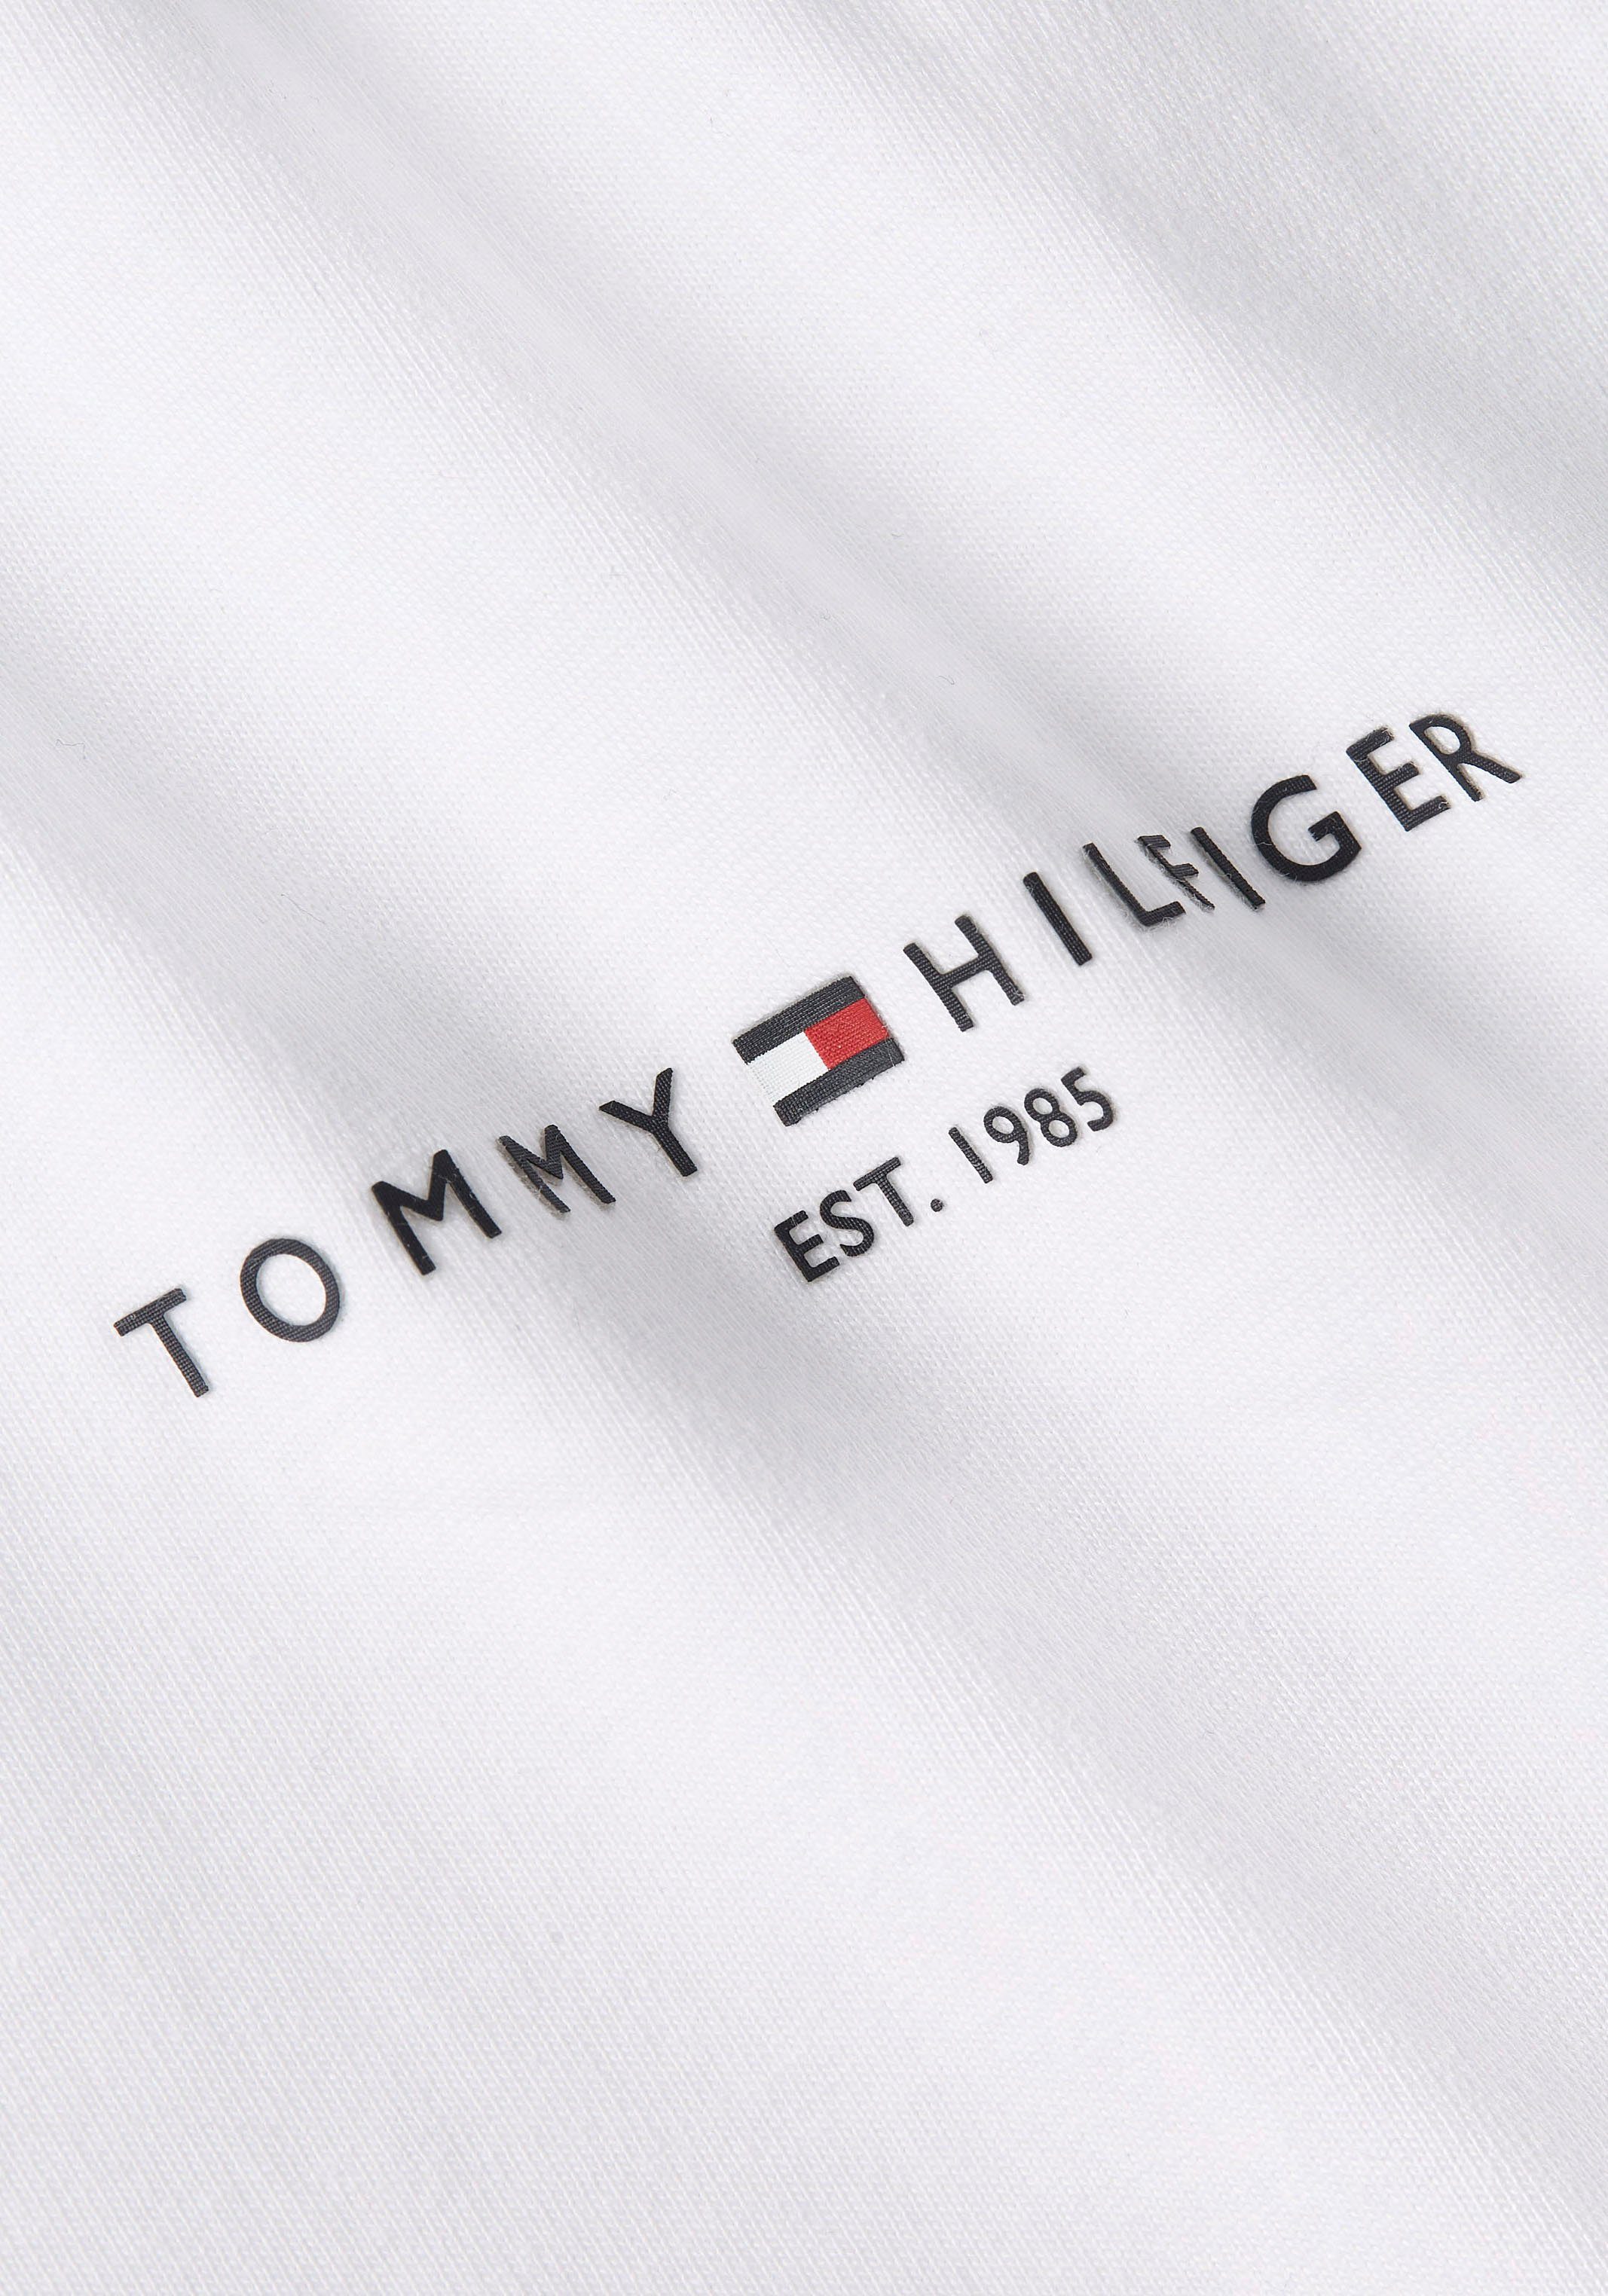 STRIPE Ärmeln an TH-Farben Tommy mit Streifen PREP White in GLOBAL TEE beiden Rundhalsshirt Hilfiger